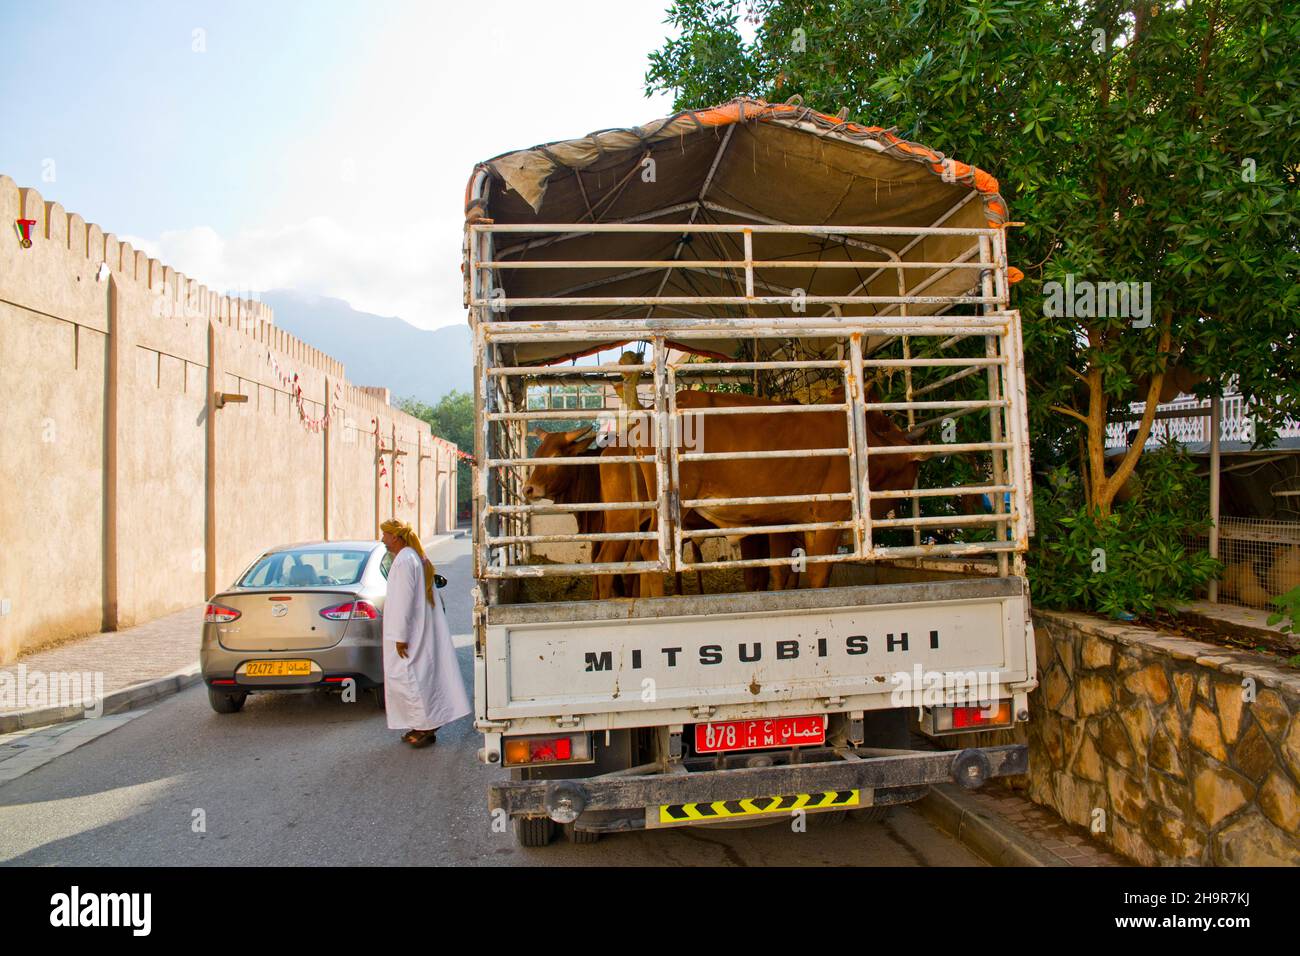 Cattle market, souk, oasis city of Nizwa, Nizwa, Oman Stock Photo